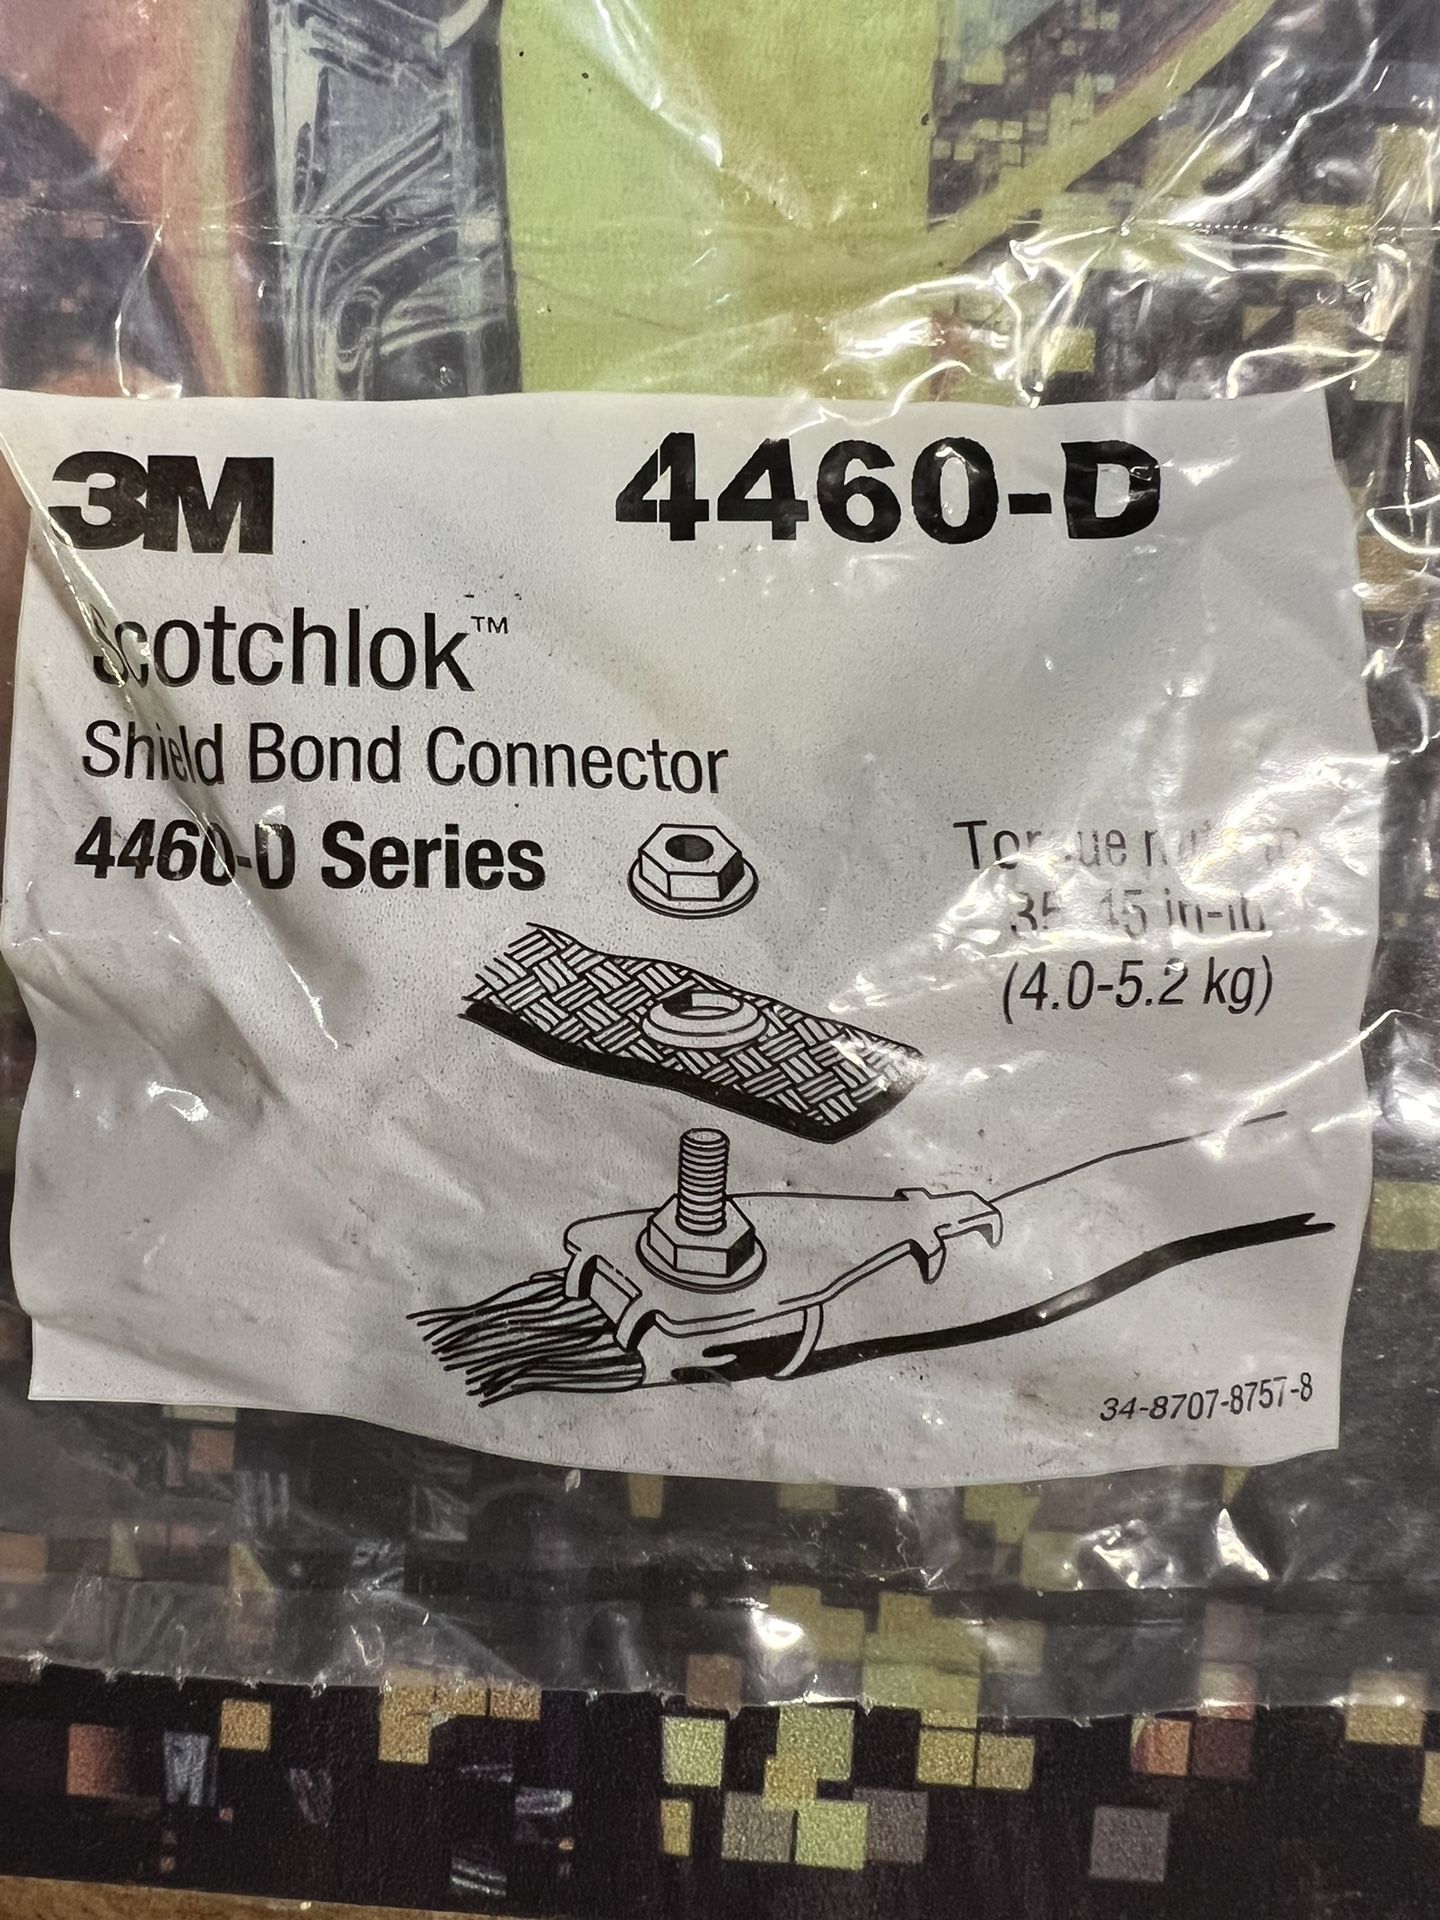 3M 4460 D Shield Bond Connectors. 